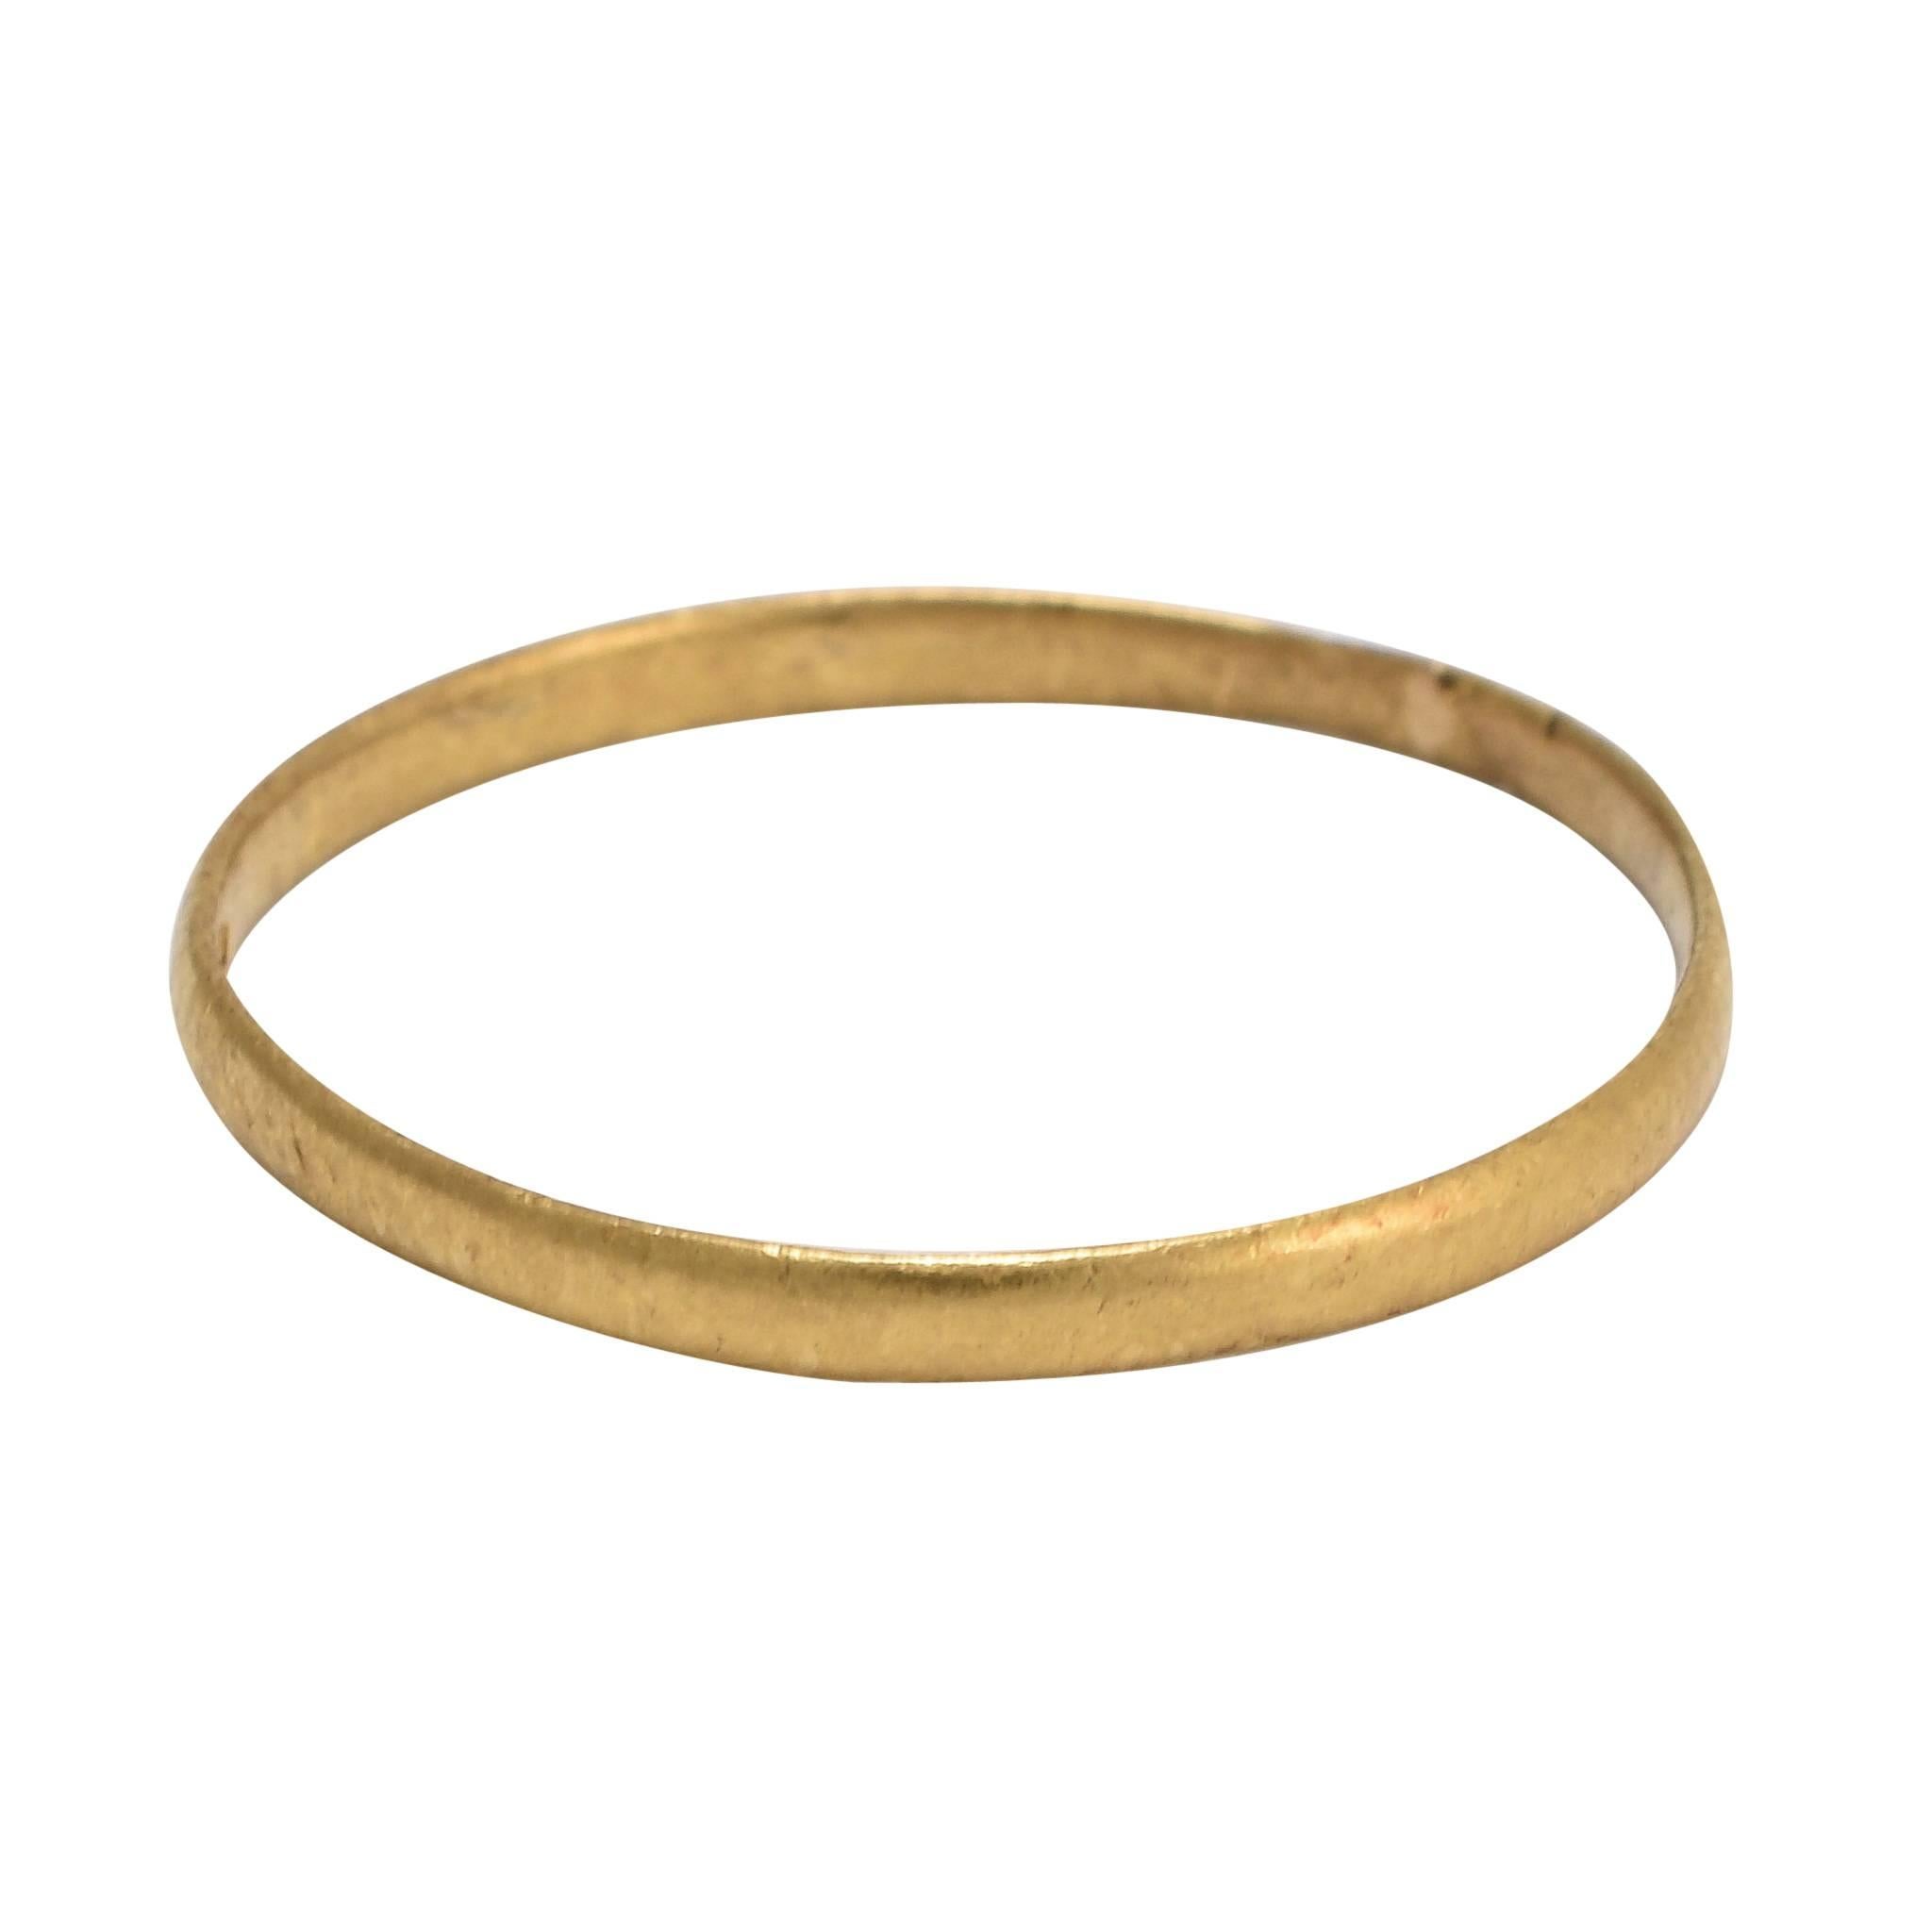 Antique Georgian 18 Karat Gold "1806" Wedding Band Ring